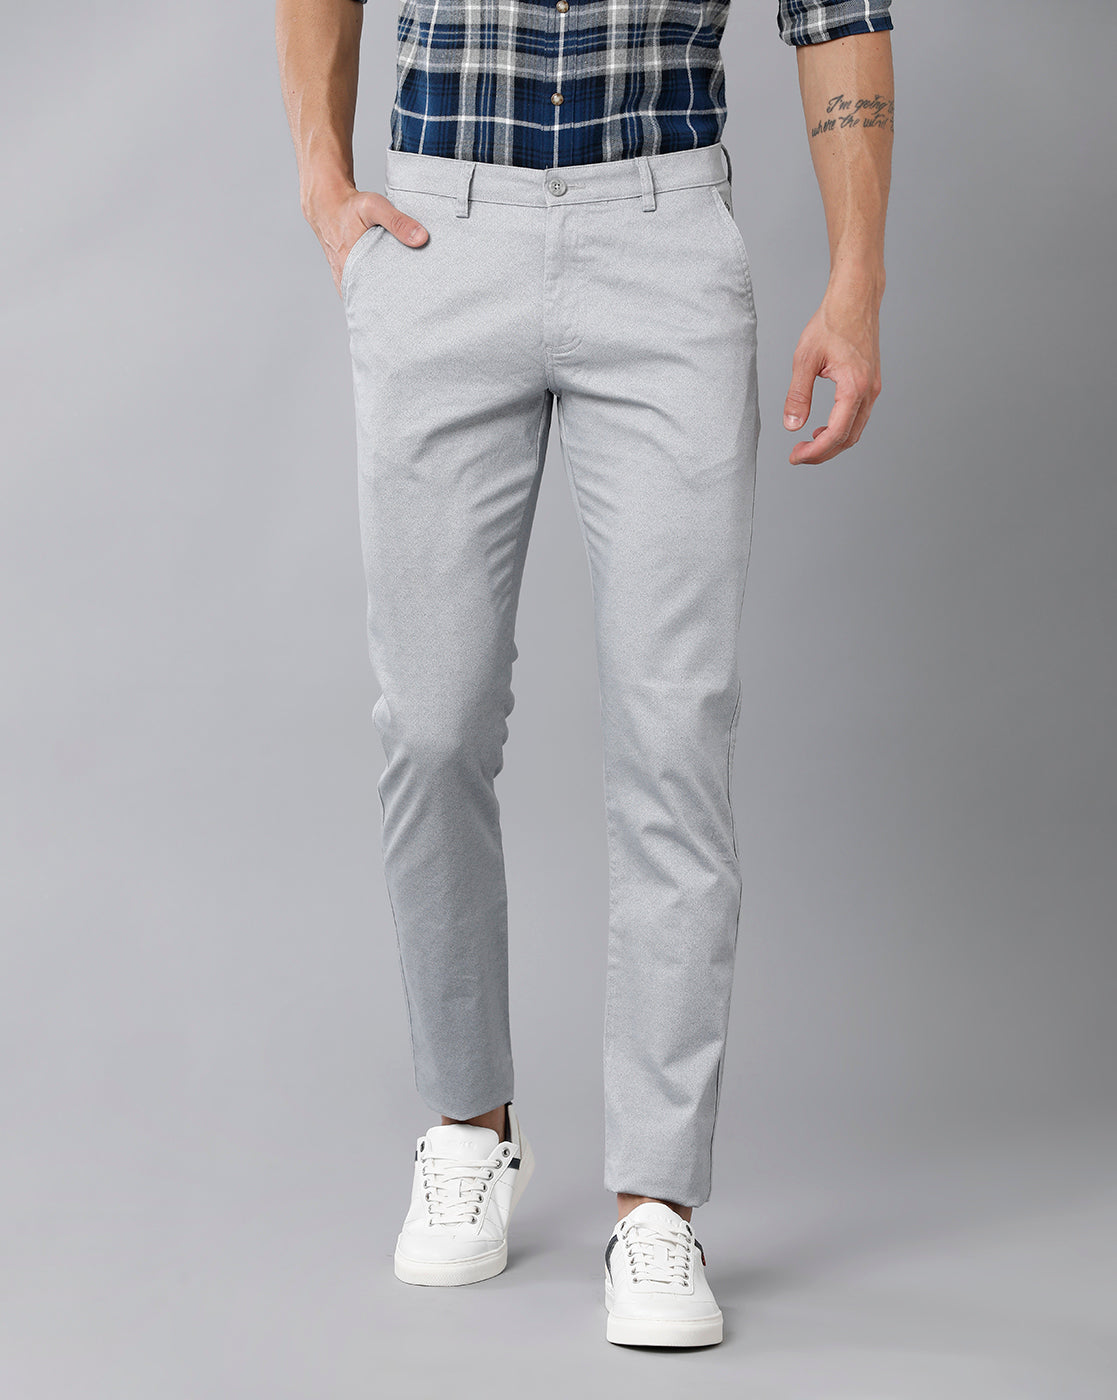 Buy Ash Grey Trousers  Pants for Men by BREAKBOUNCE Online  Ajiocom